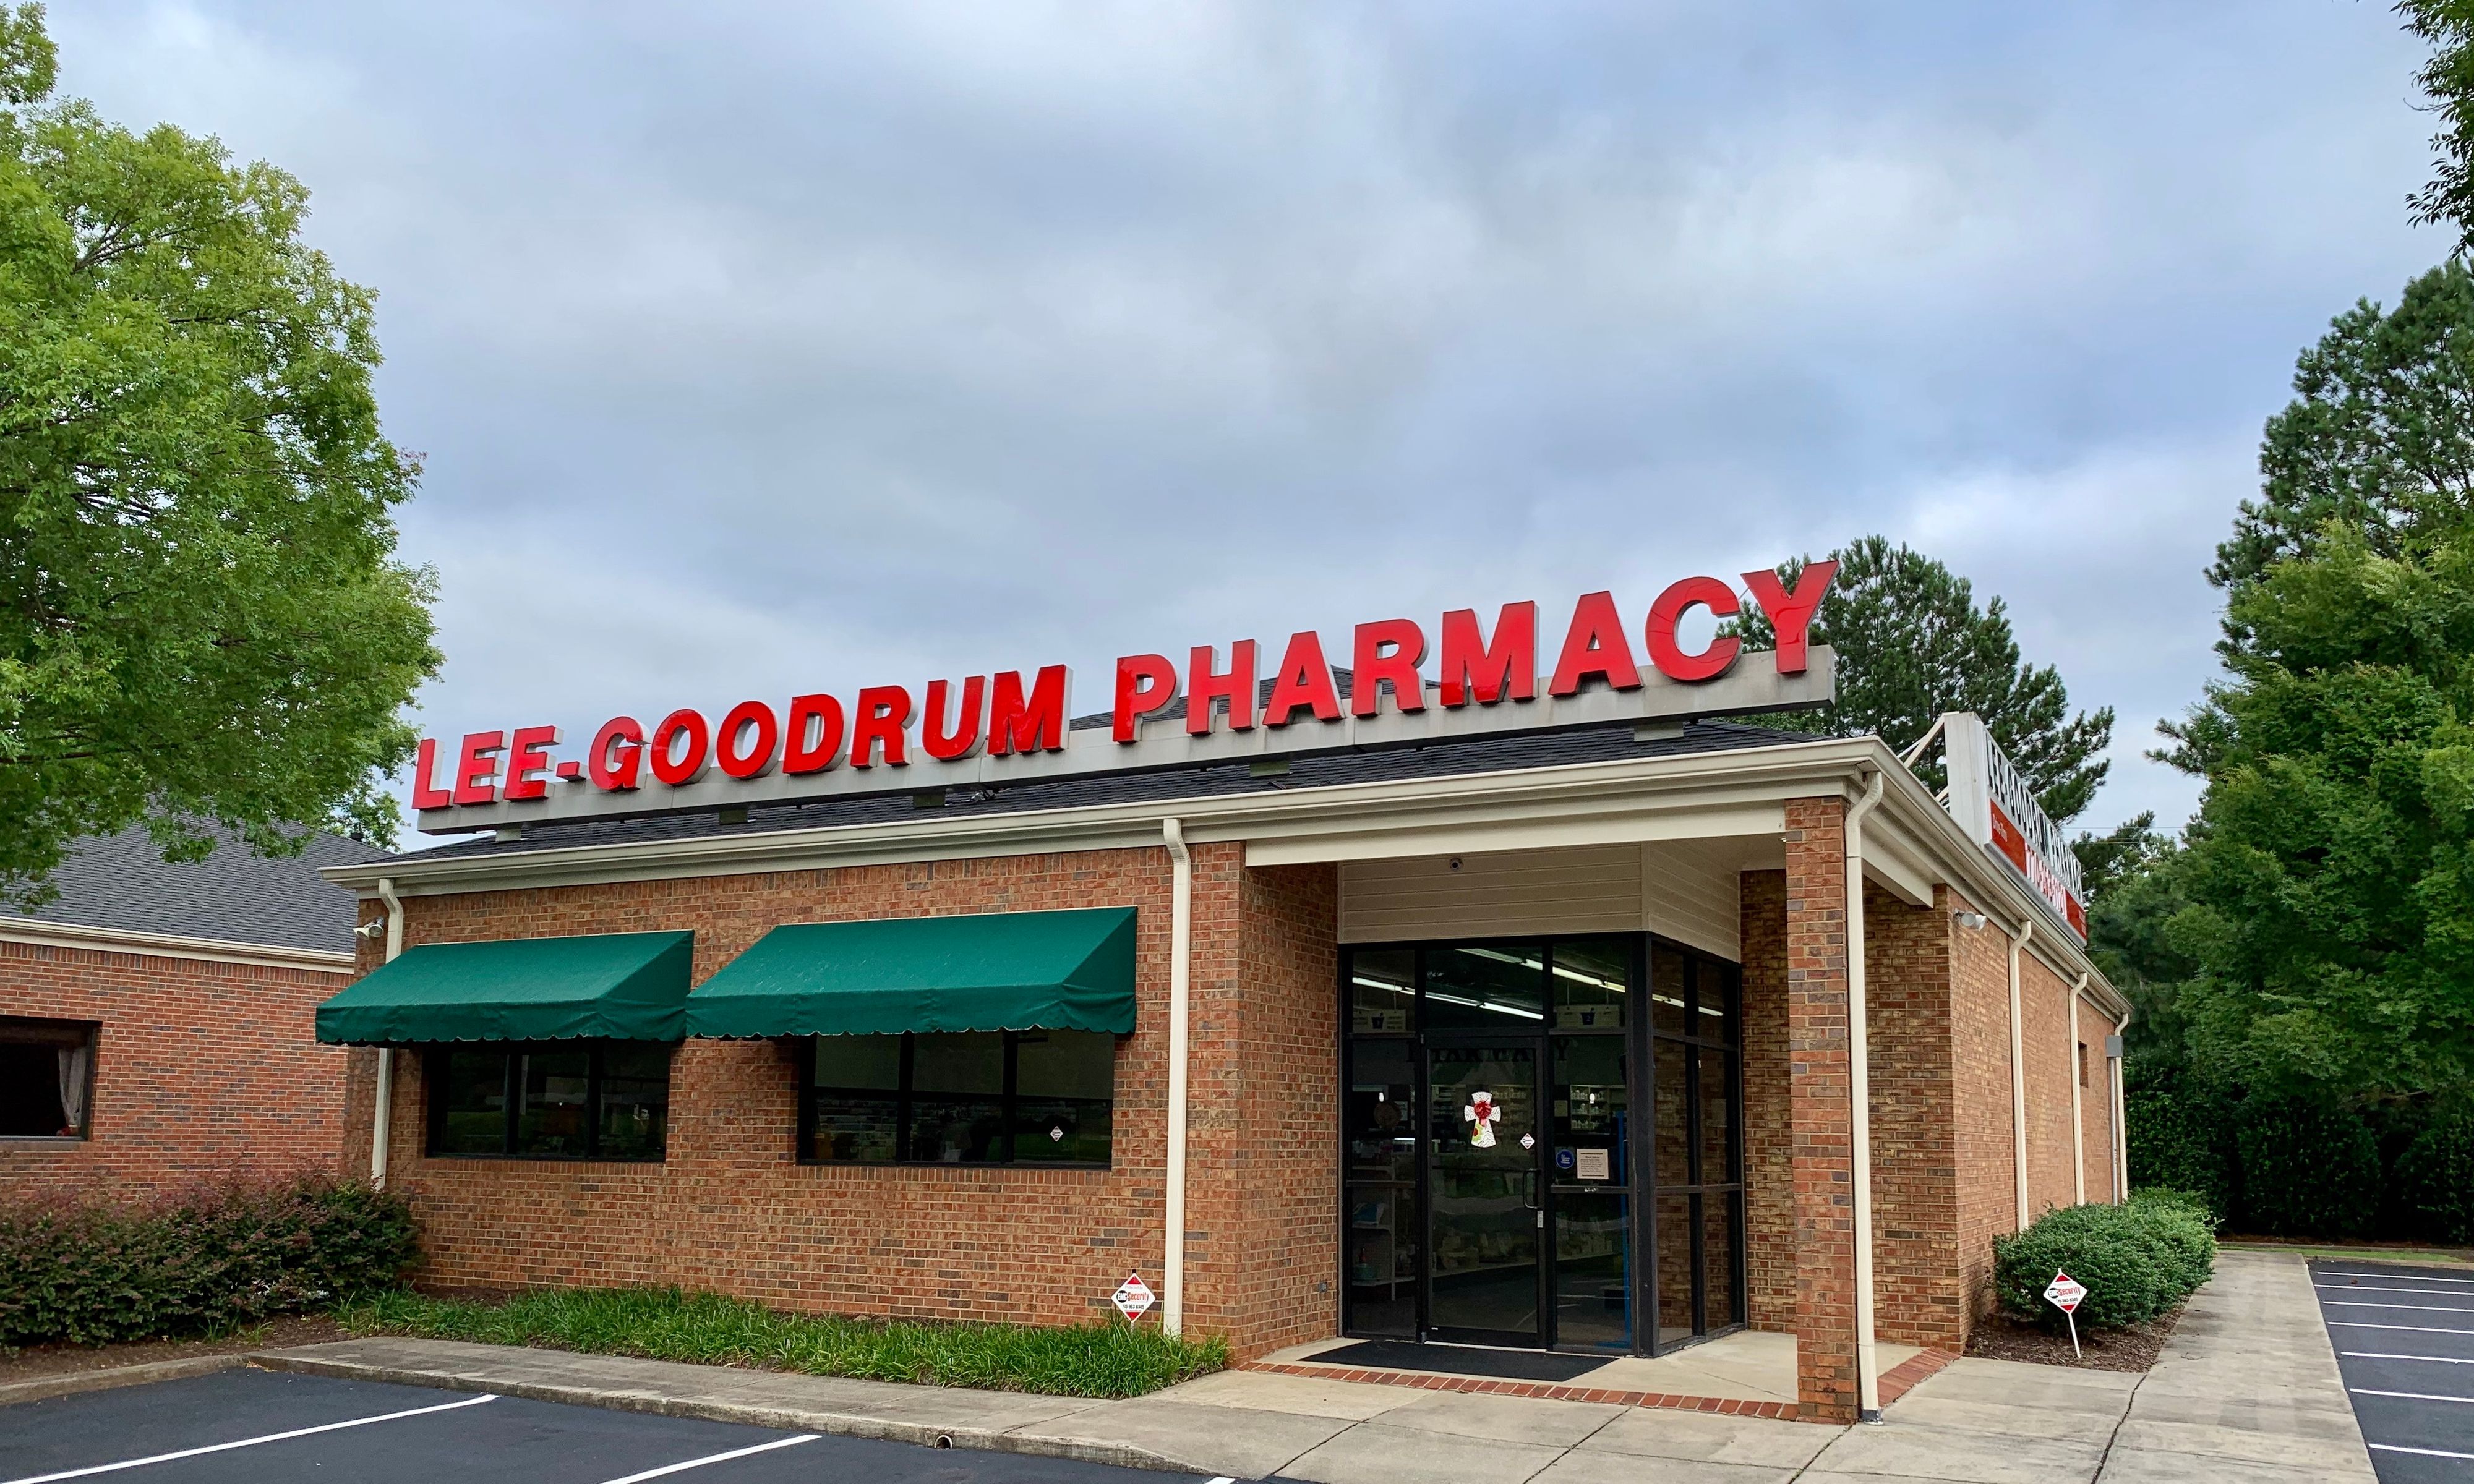 Lee-Goodrum Pharmacy